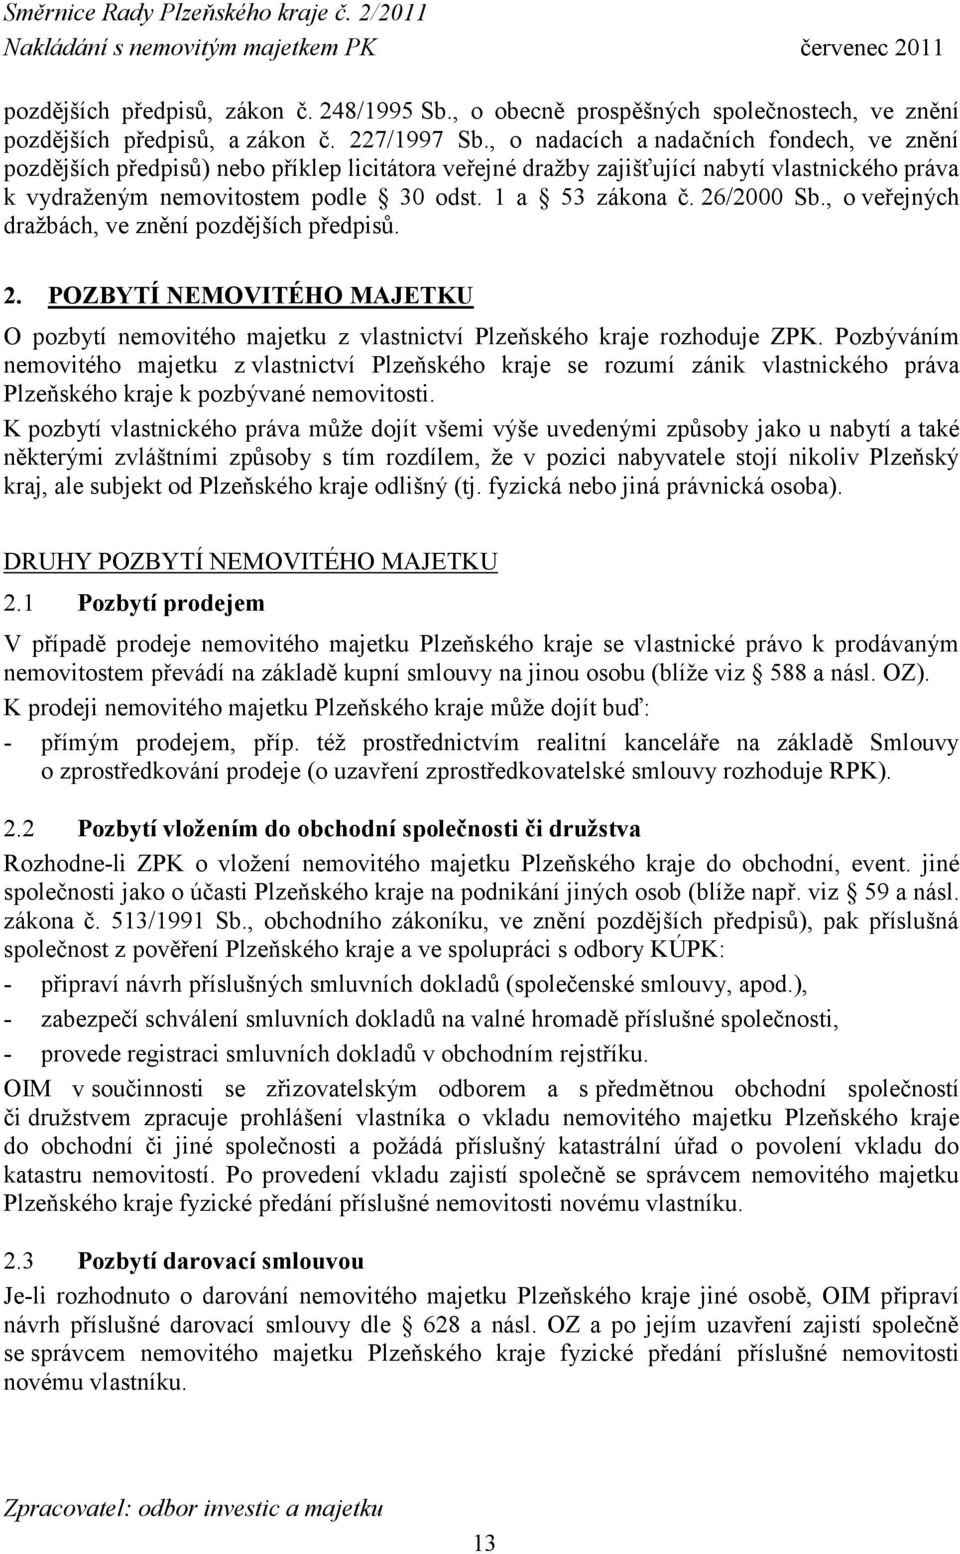 26/2000 Sb., o veřejných dražbách, ve znění pozdějších předpisů. 2. POZBYTÍ NEMOVITÉHO MAJETKU O pozbytí nemovitého majetku z vlastnictví Plzeňského kraje rozhoduje ZPK.